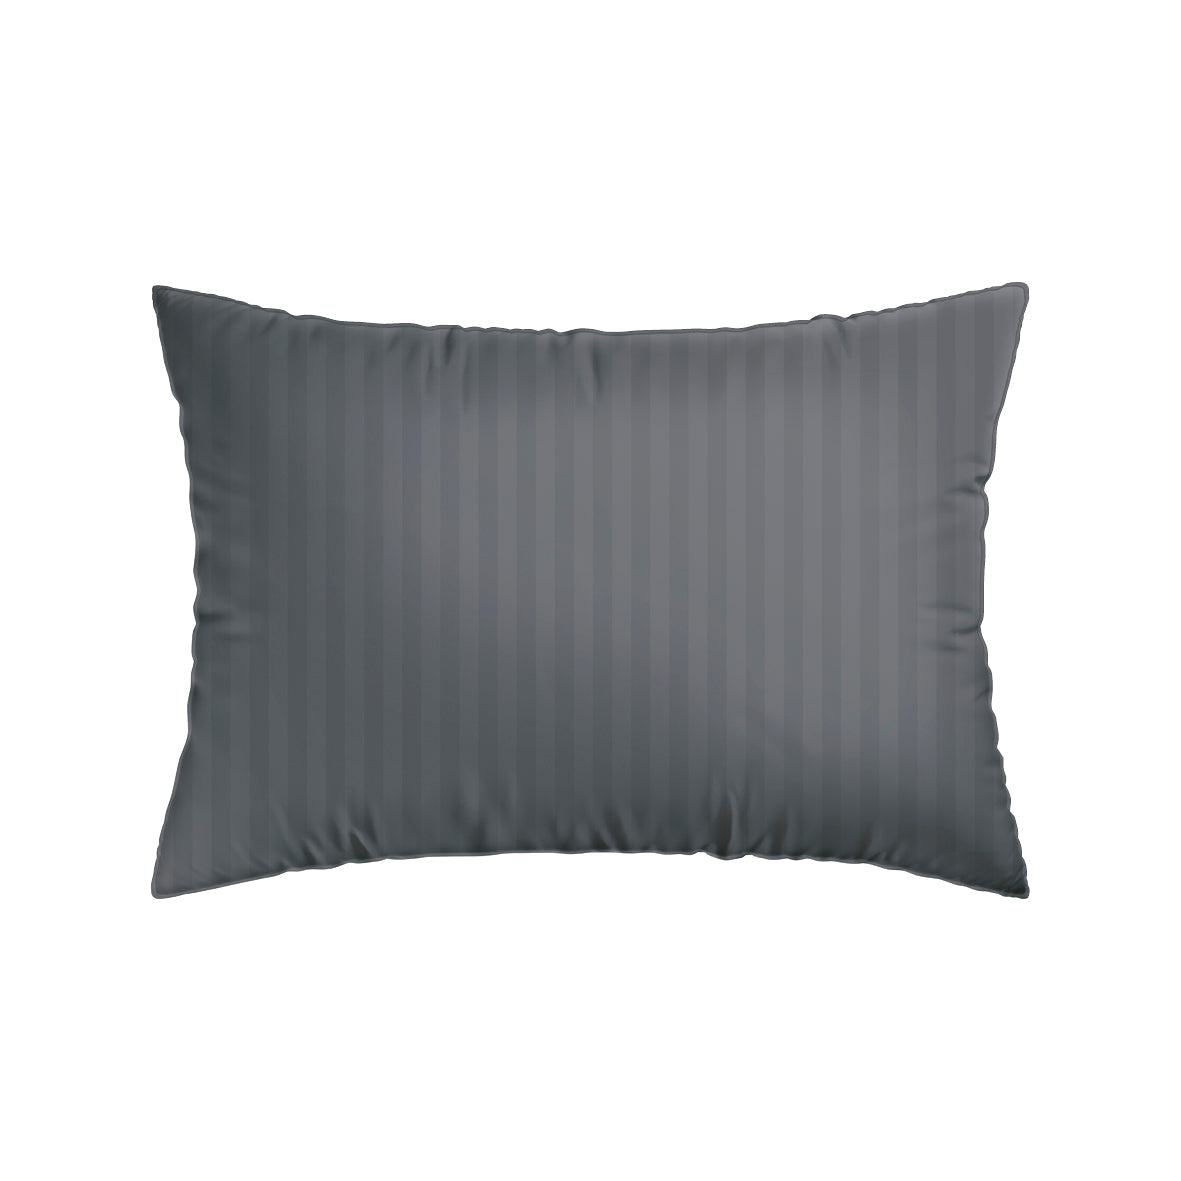 Pillowcase(s) cotton satin dobby stripe woven Taupe